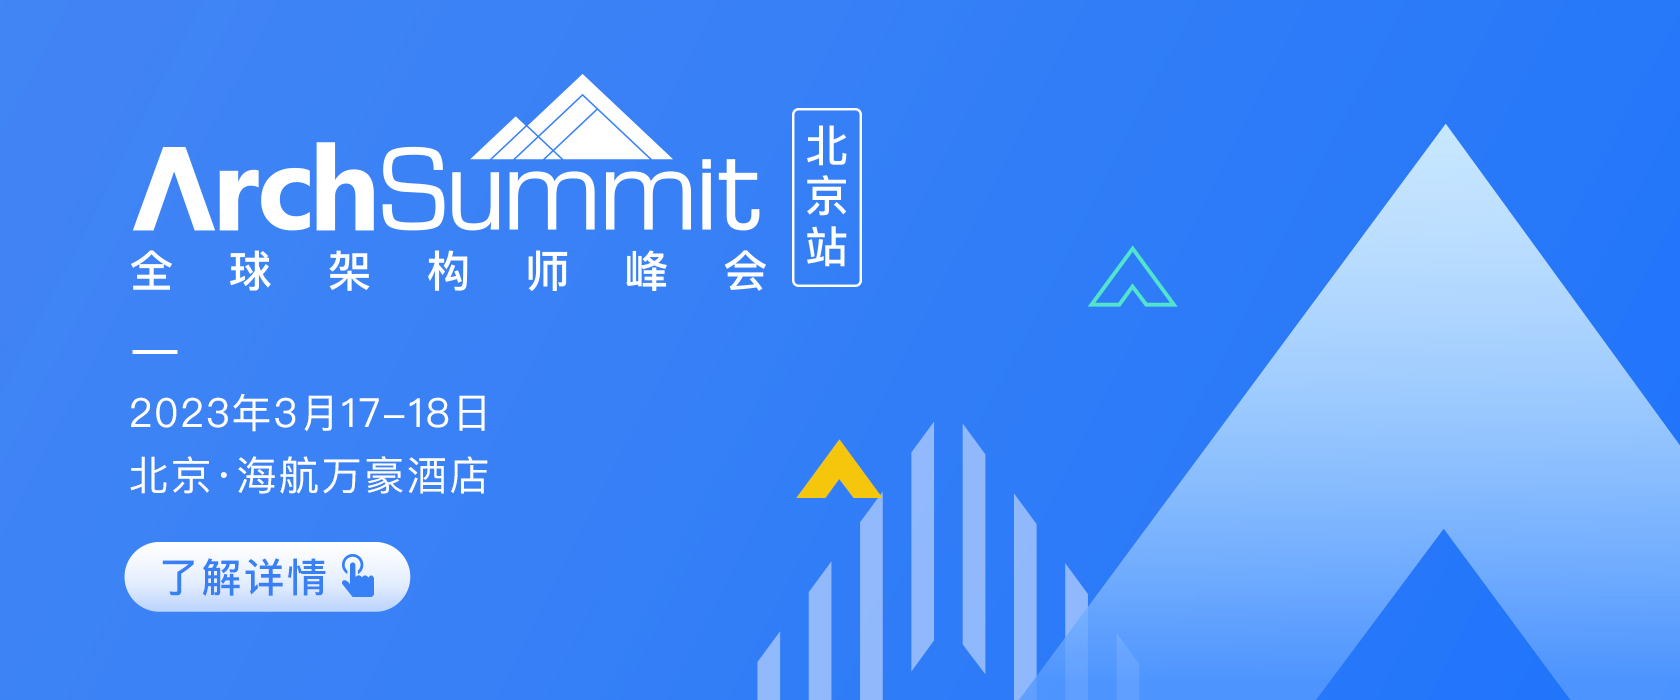 2023全球架構師峰會ArchSummit 北京